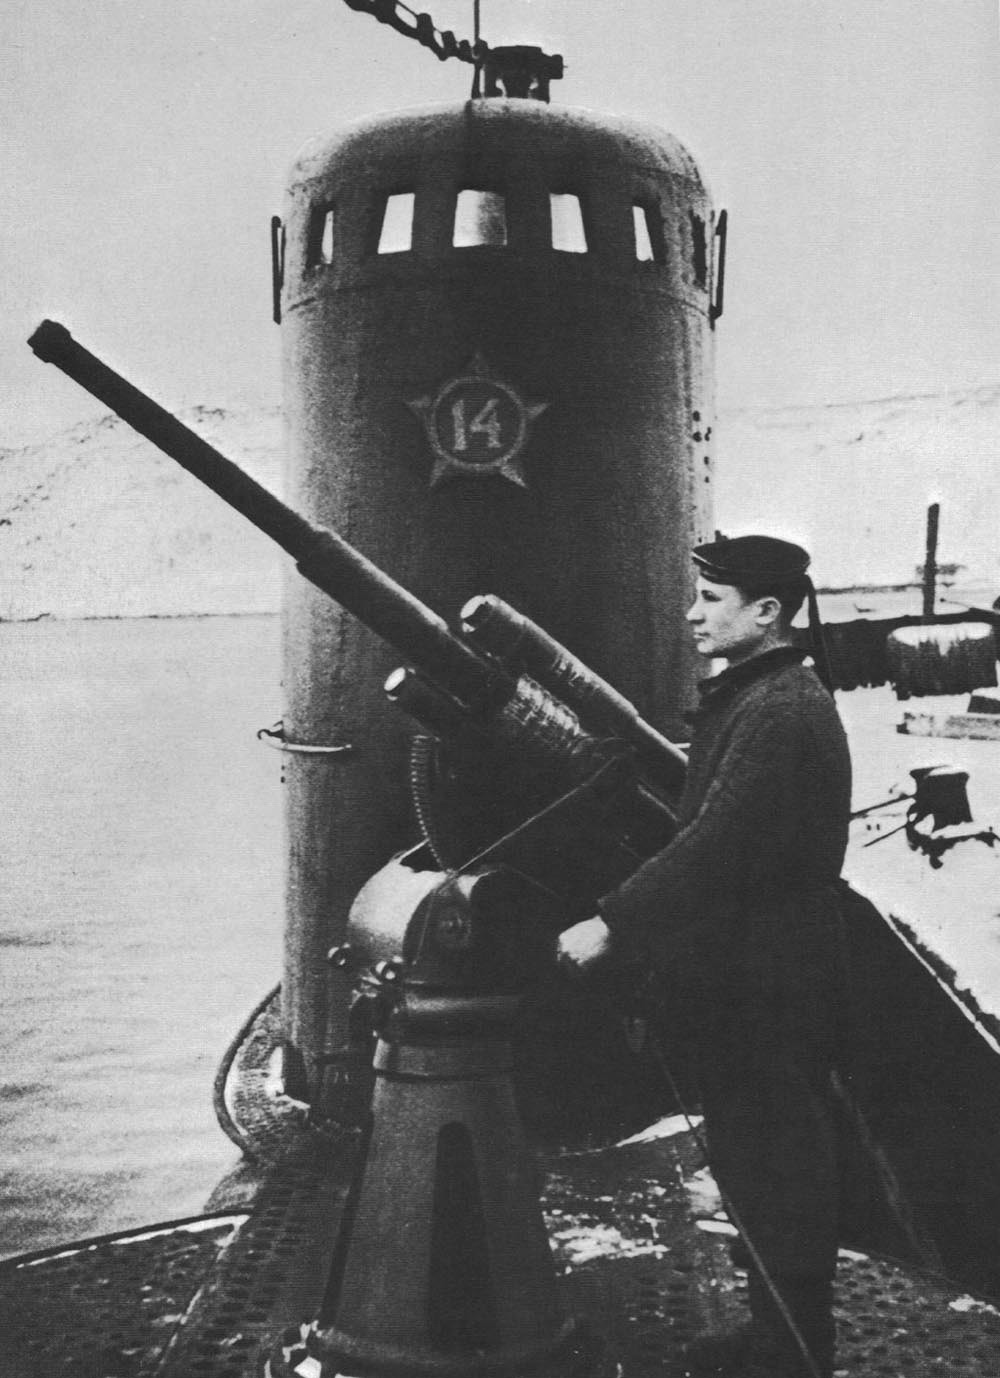 Мировой подводный флот. Подводная лодка ВОВ 1941-1945. Подводная лодка Малютка 1941-1945. Советские подлодки второй мировой войны 1941-1945. Подводная лодка м 171 Малютка.